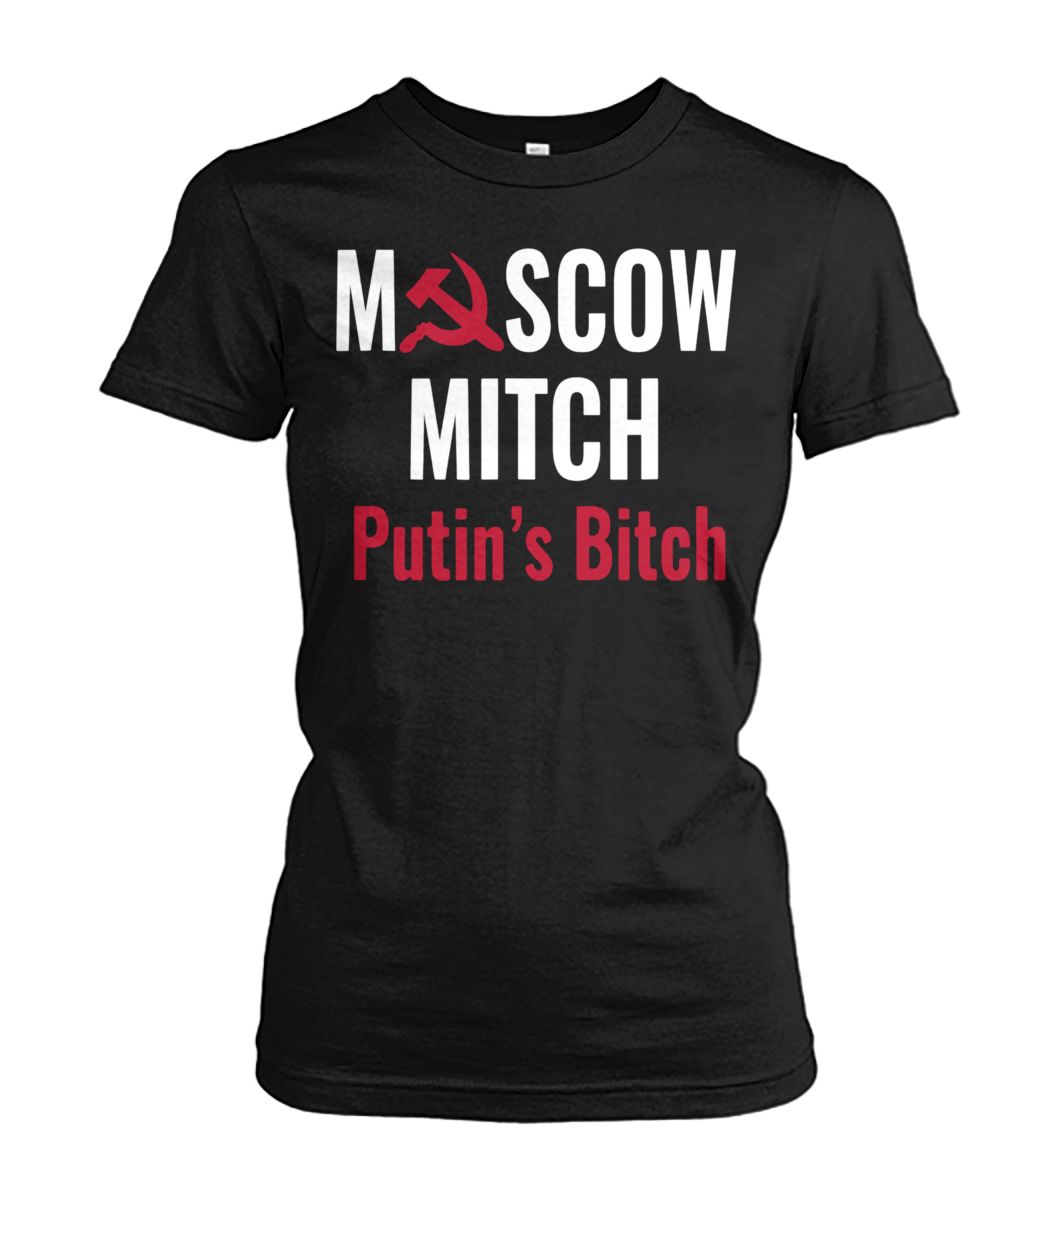 Moscow mitch putin's bitch women's crew tee